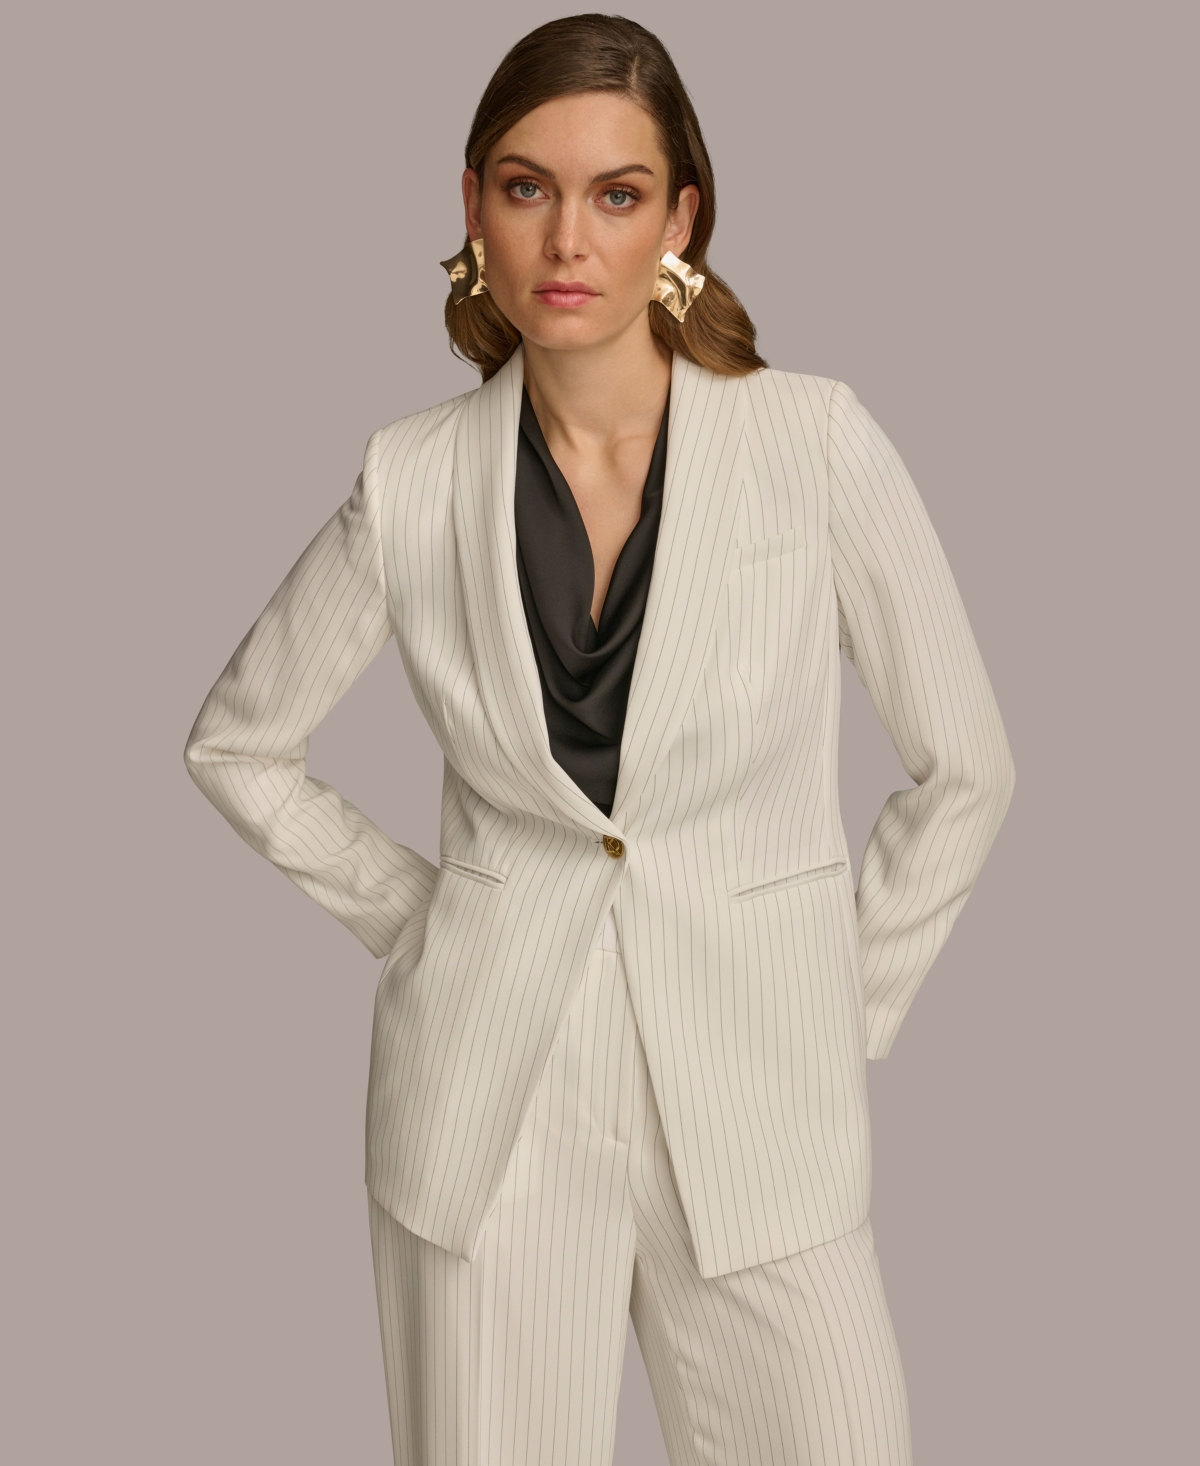 Women's One Button Pinstripe Blazer - Cream/Black